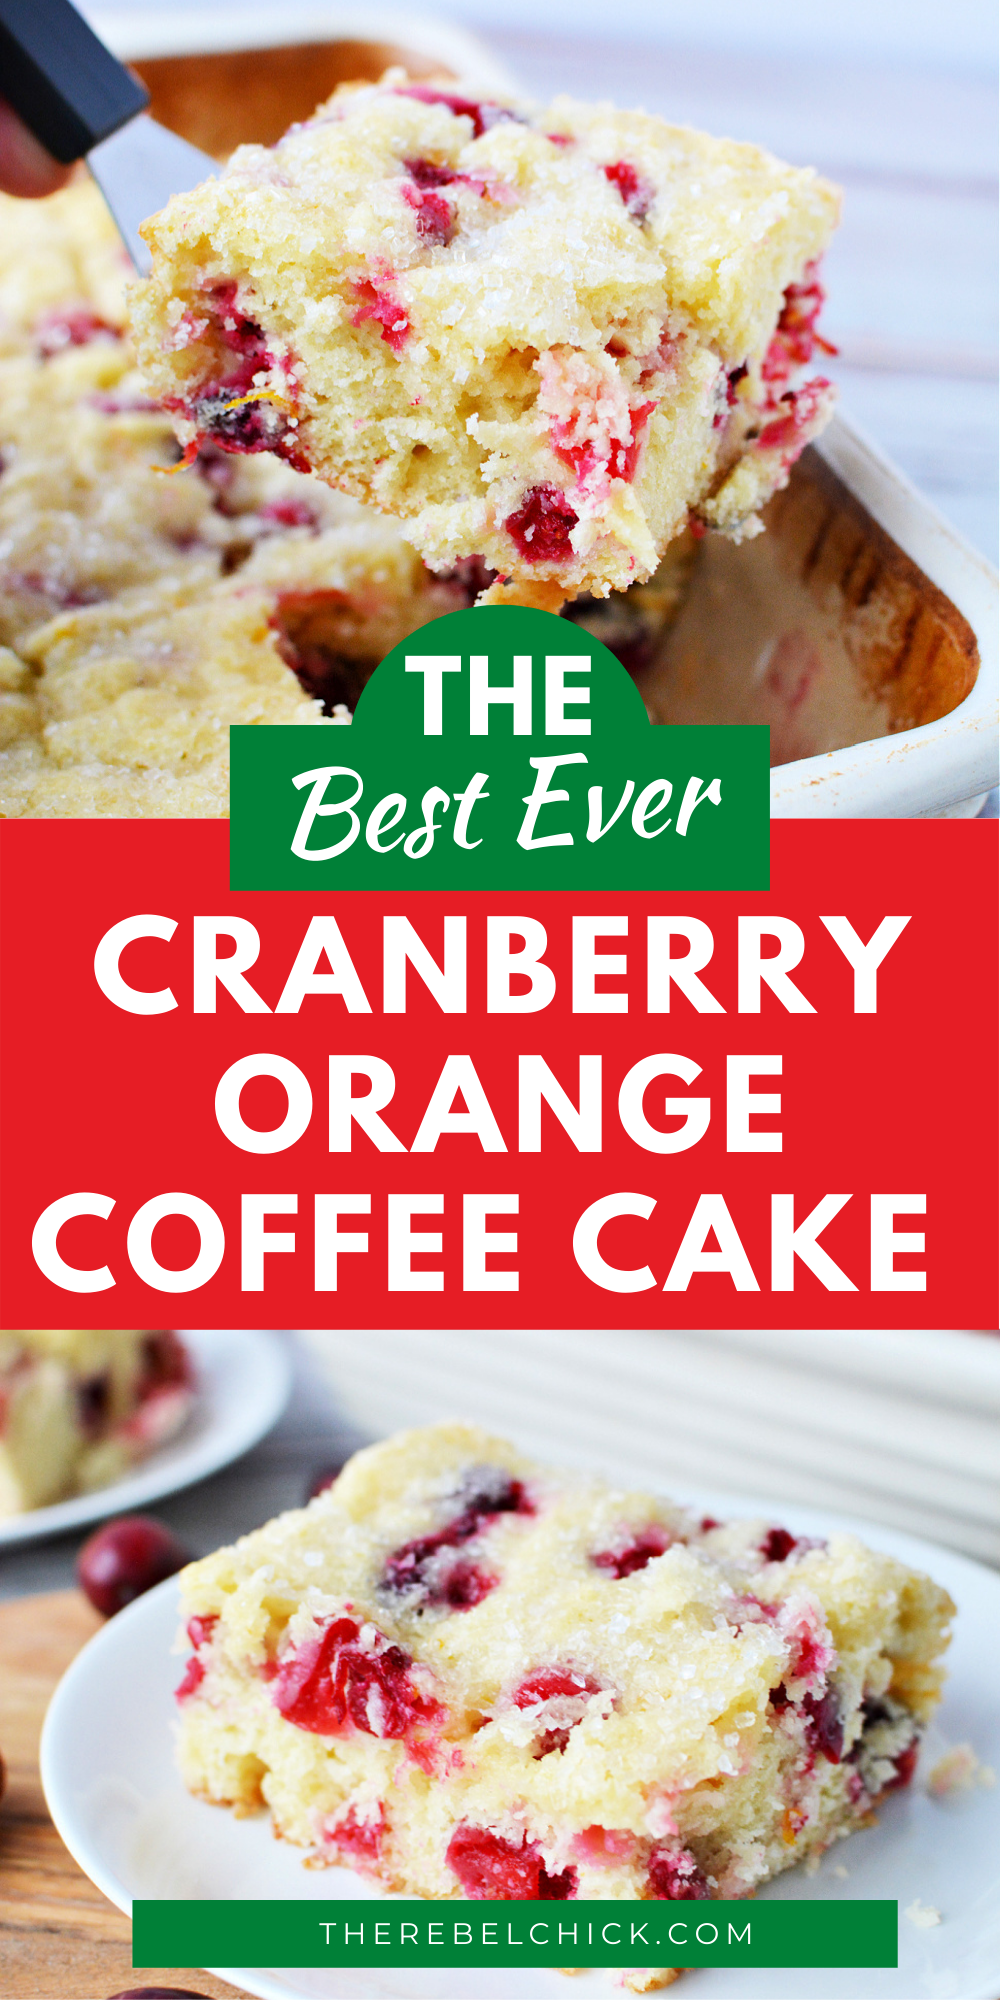 Cranberry Orange Coffee Cake Recipe for Christmas